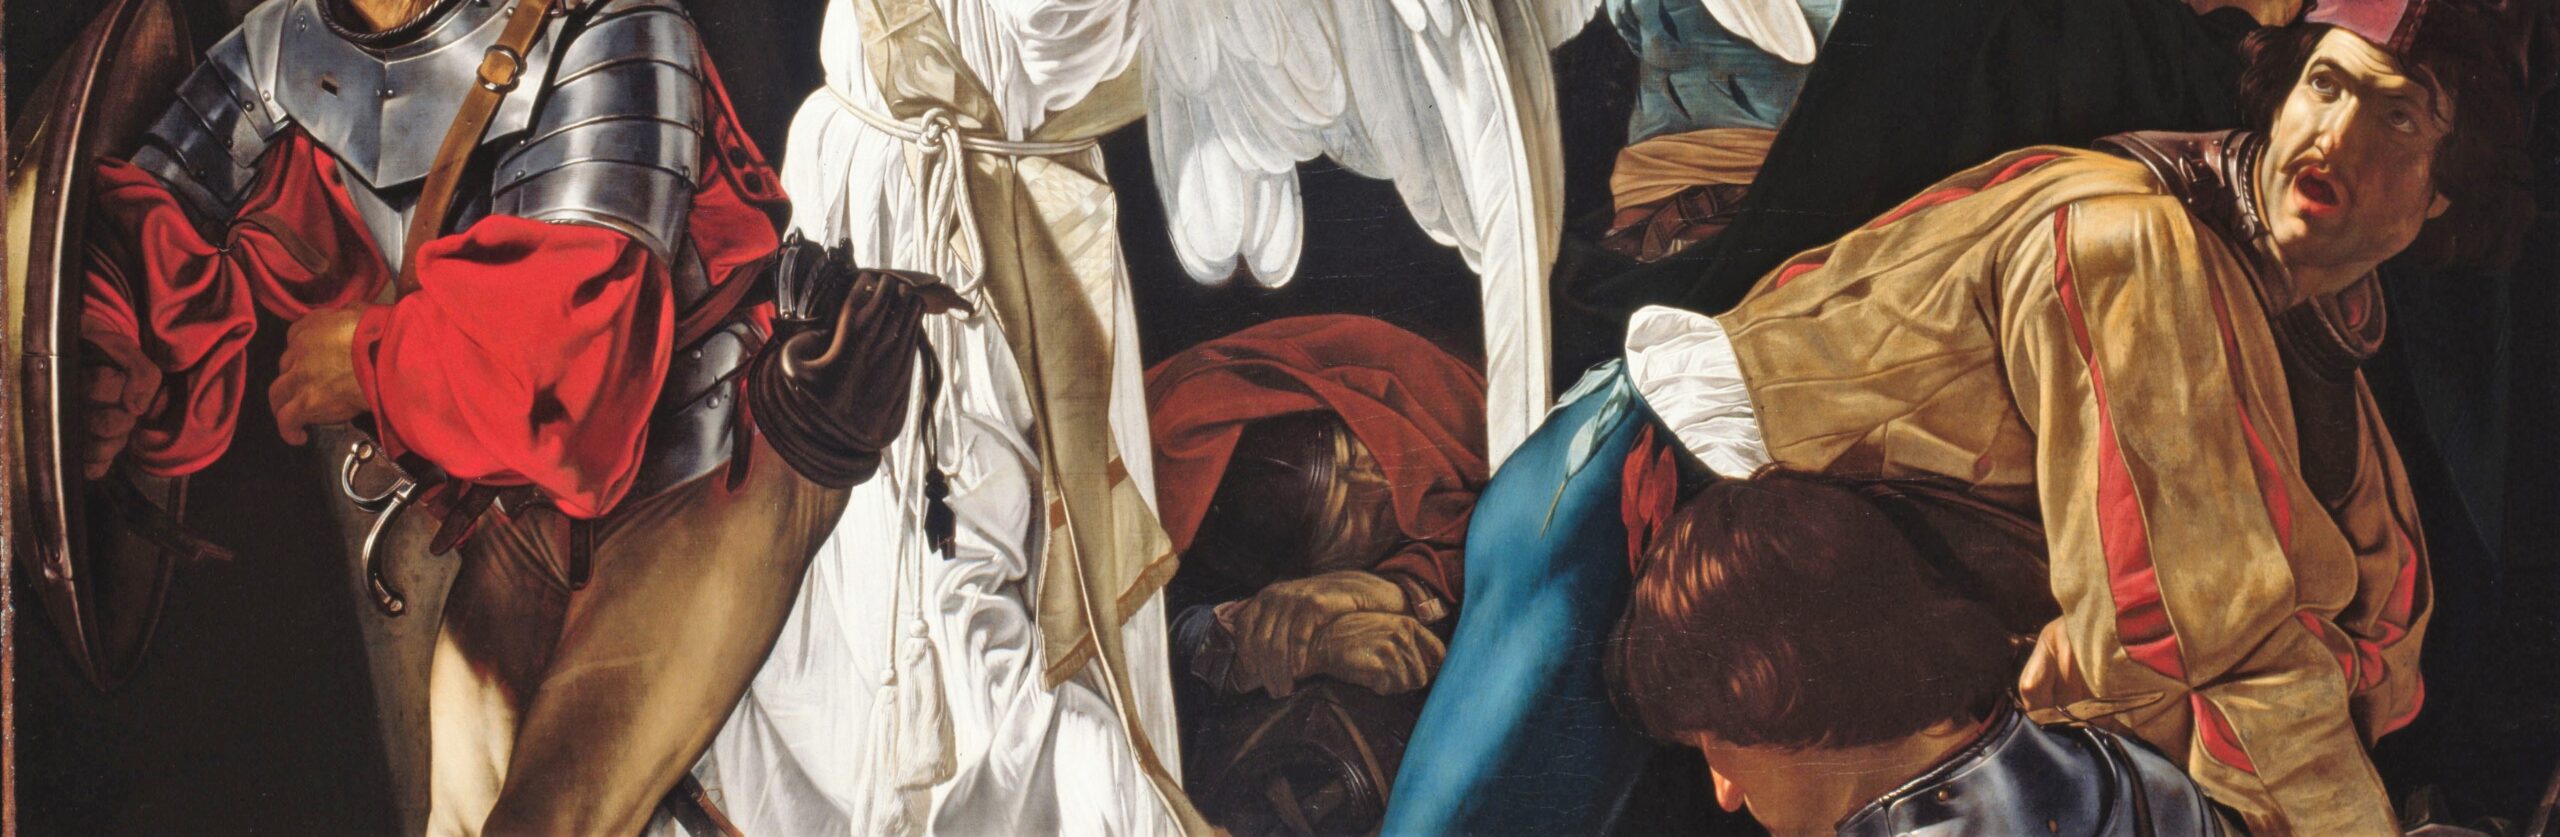 Francesco_Buoneri,_called_Cecco_del_Caravaggio_-_The_Resurrection 1620 Art Institute, Chicago vrac